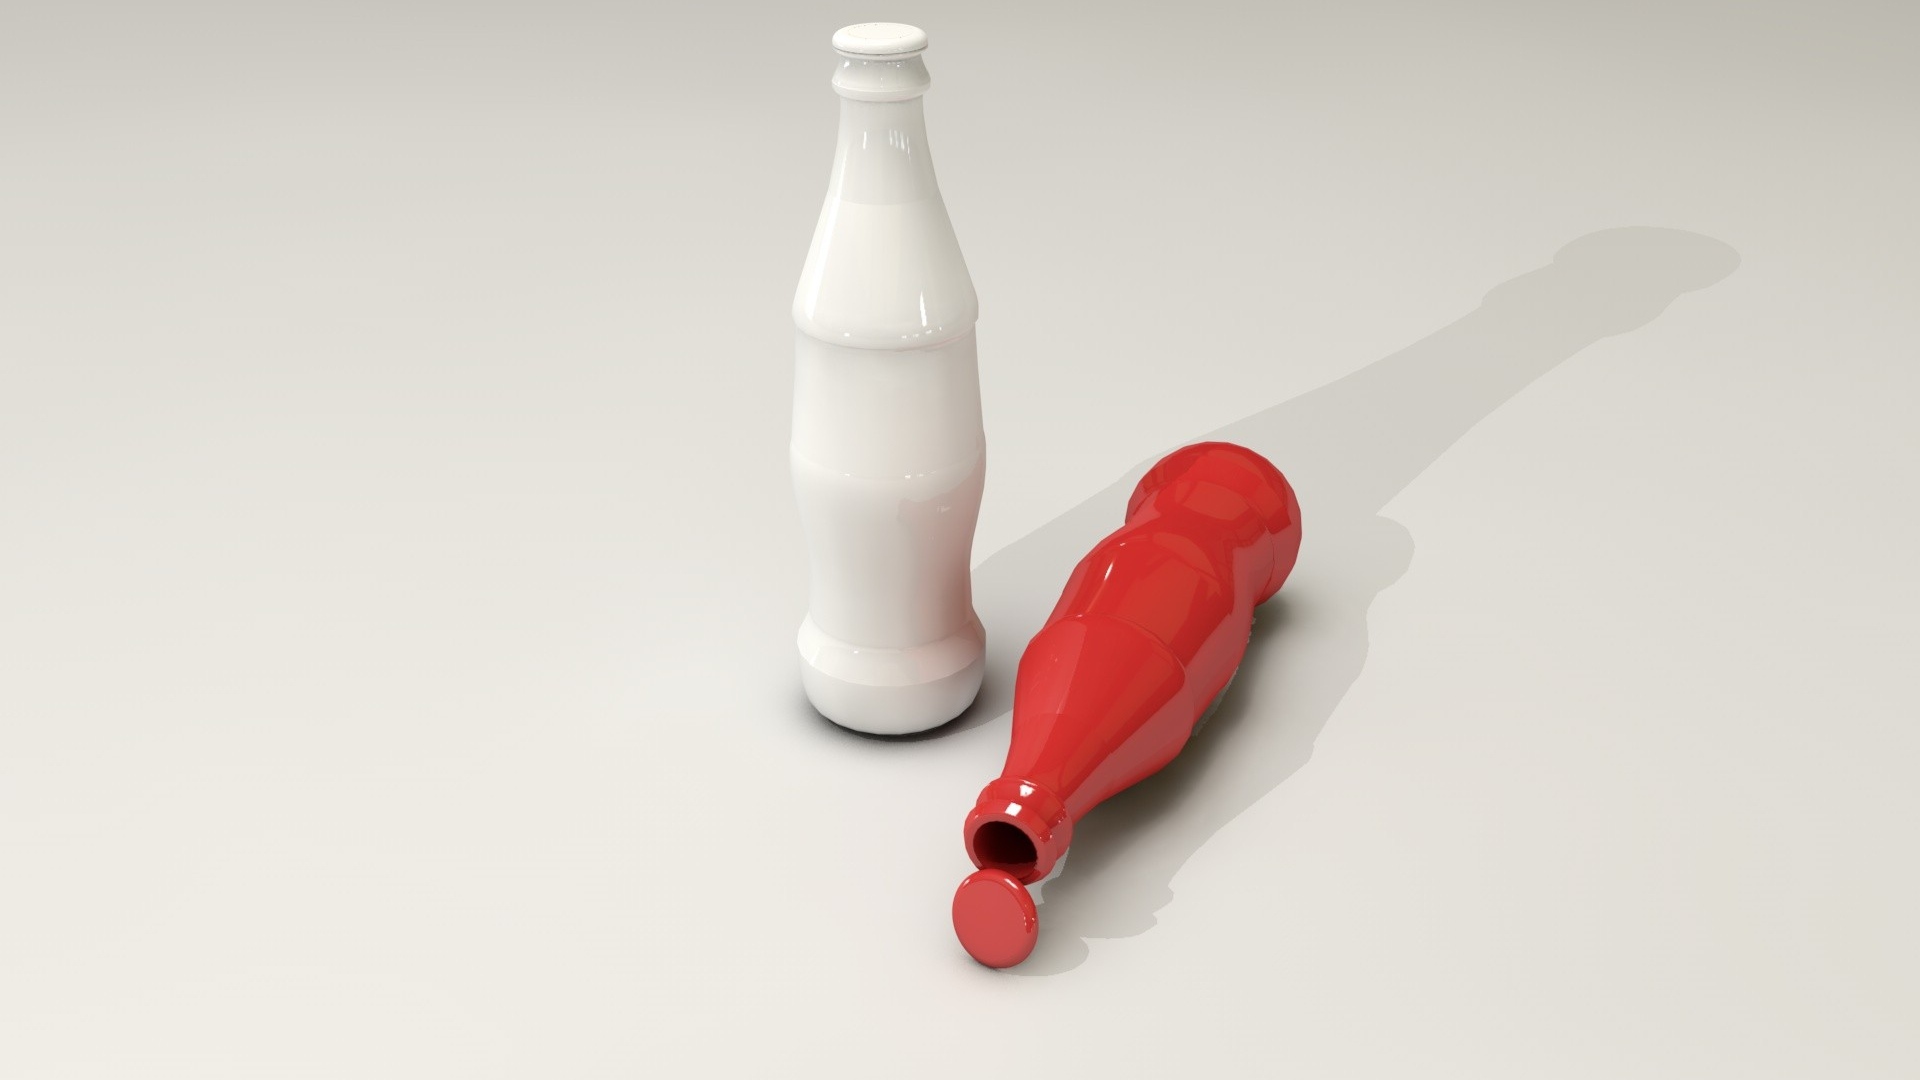 عکس جالب و زیبا از دوتا بطری سفید و قرمز مخصوص پروفایل پسرانه